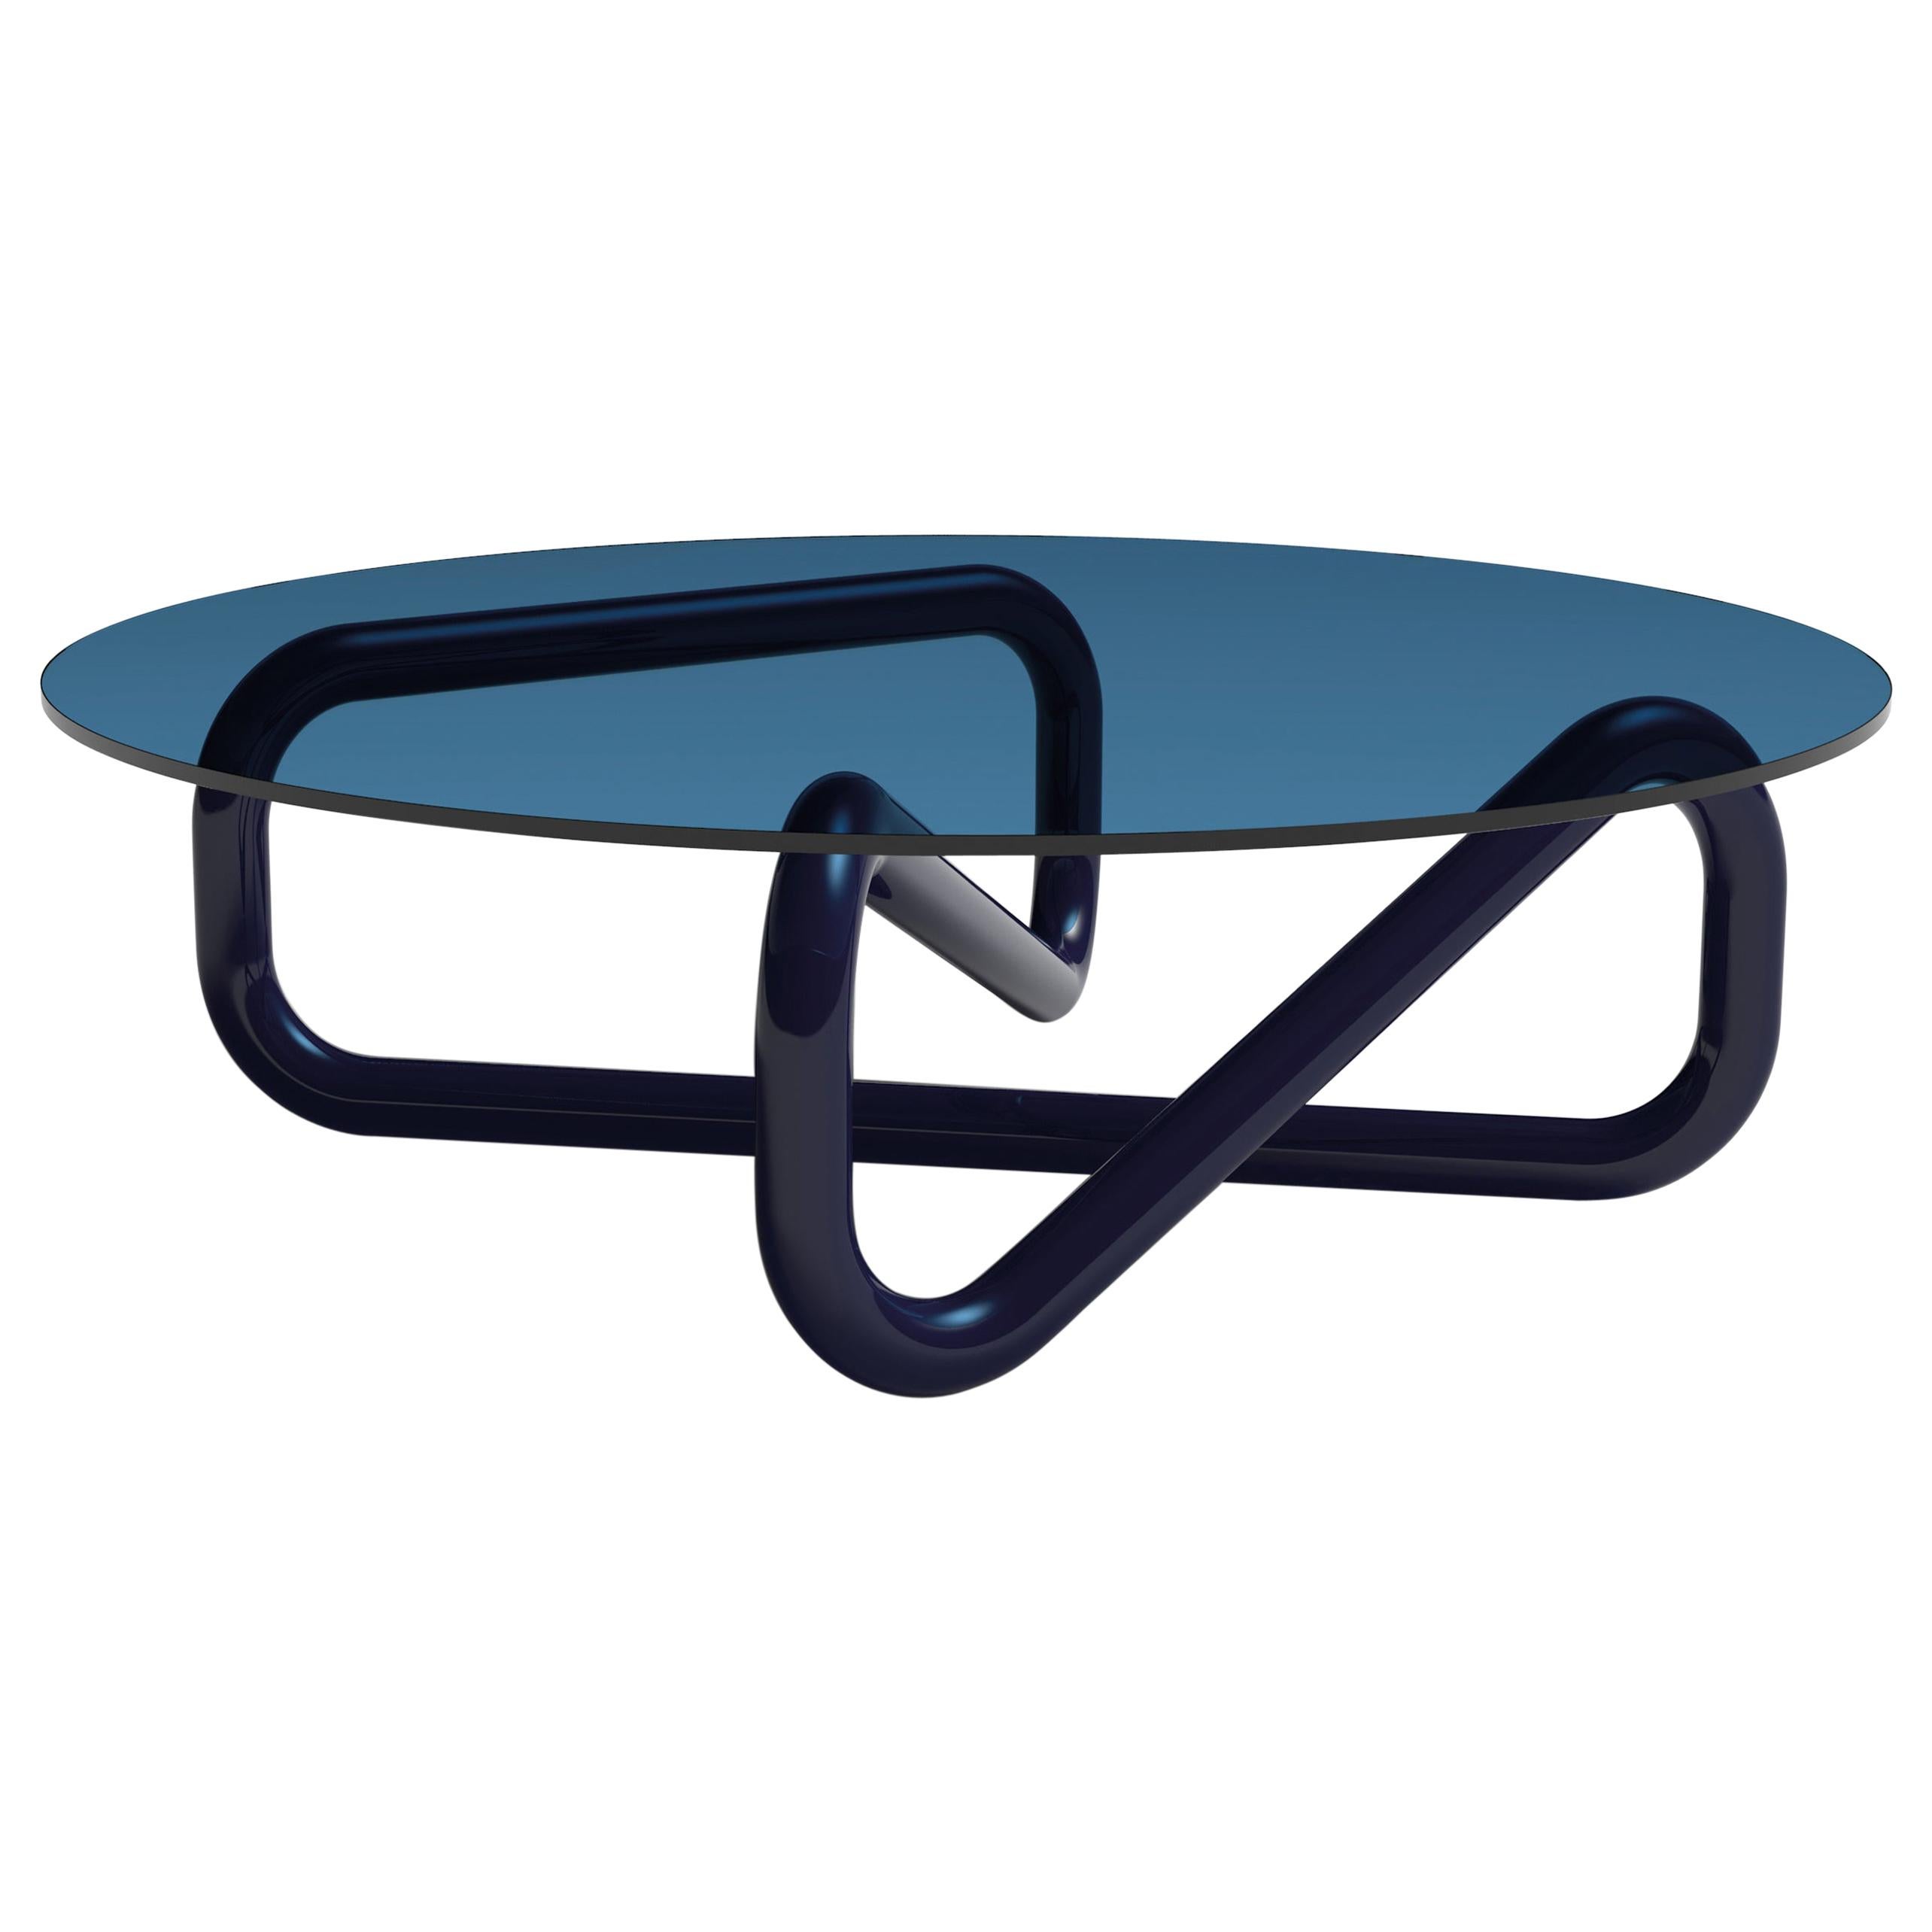 Arflex Infinity 130cm  Claesson Koivisto Rune: Hellblauer Tisch aus Glas